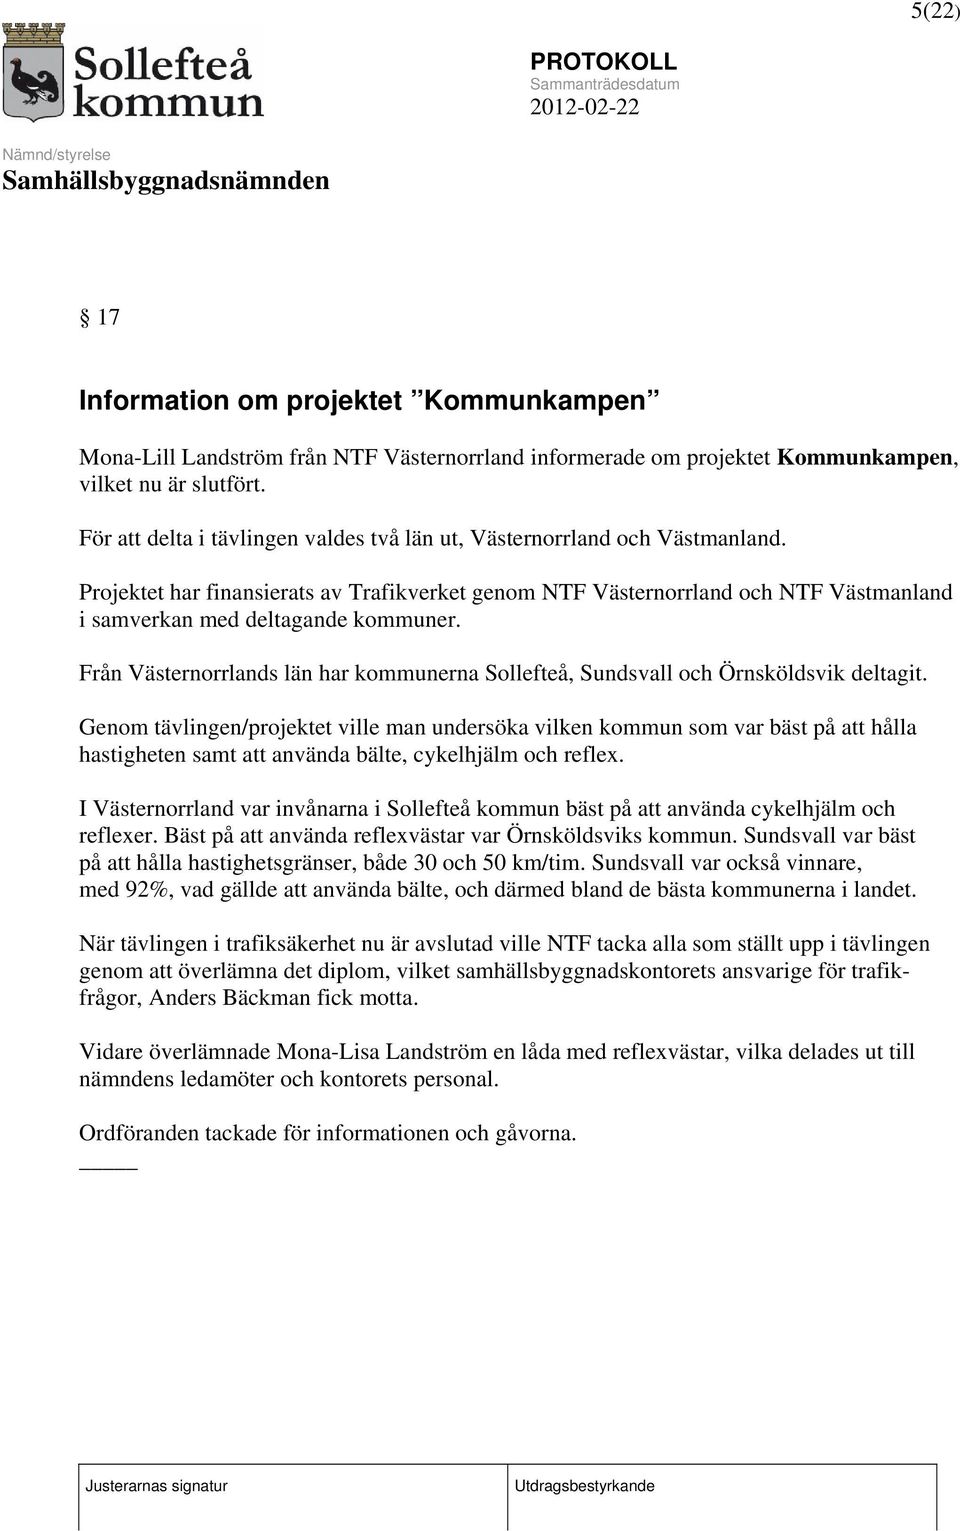 Projektet har finansierats av Trafikverket genom NTF Västernorrland och NTF Västmanland i samverkan med deltagande kommuner.